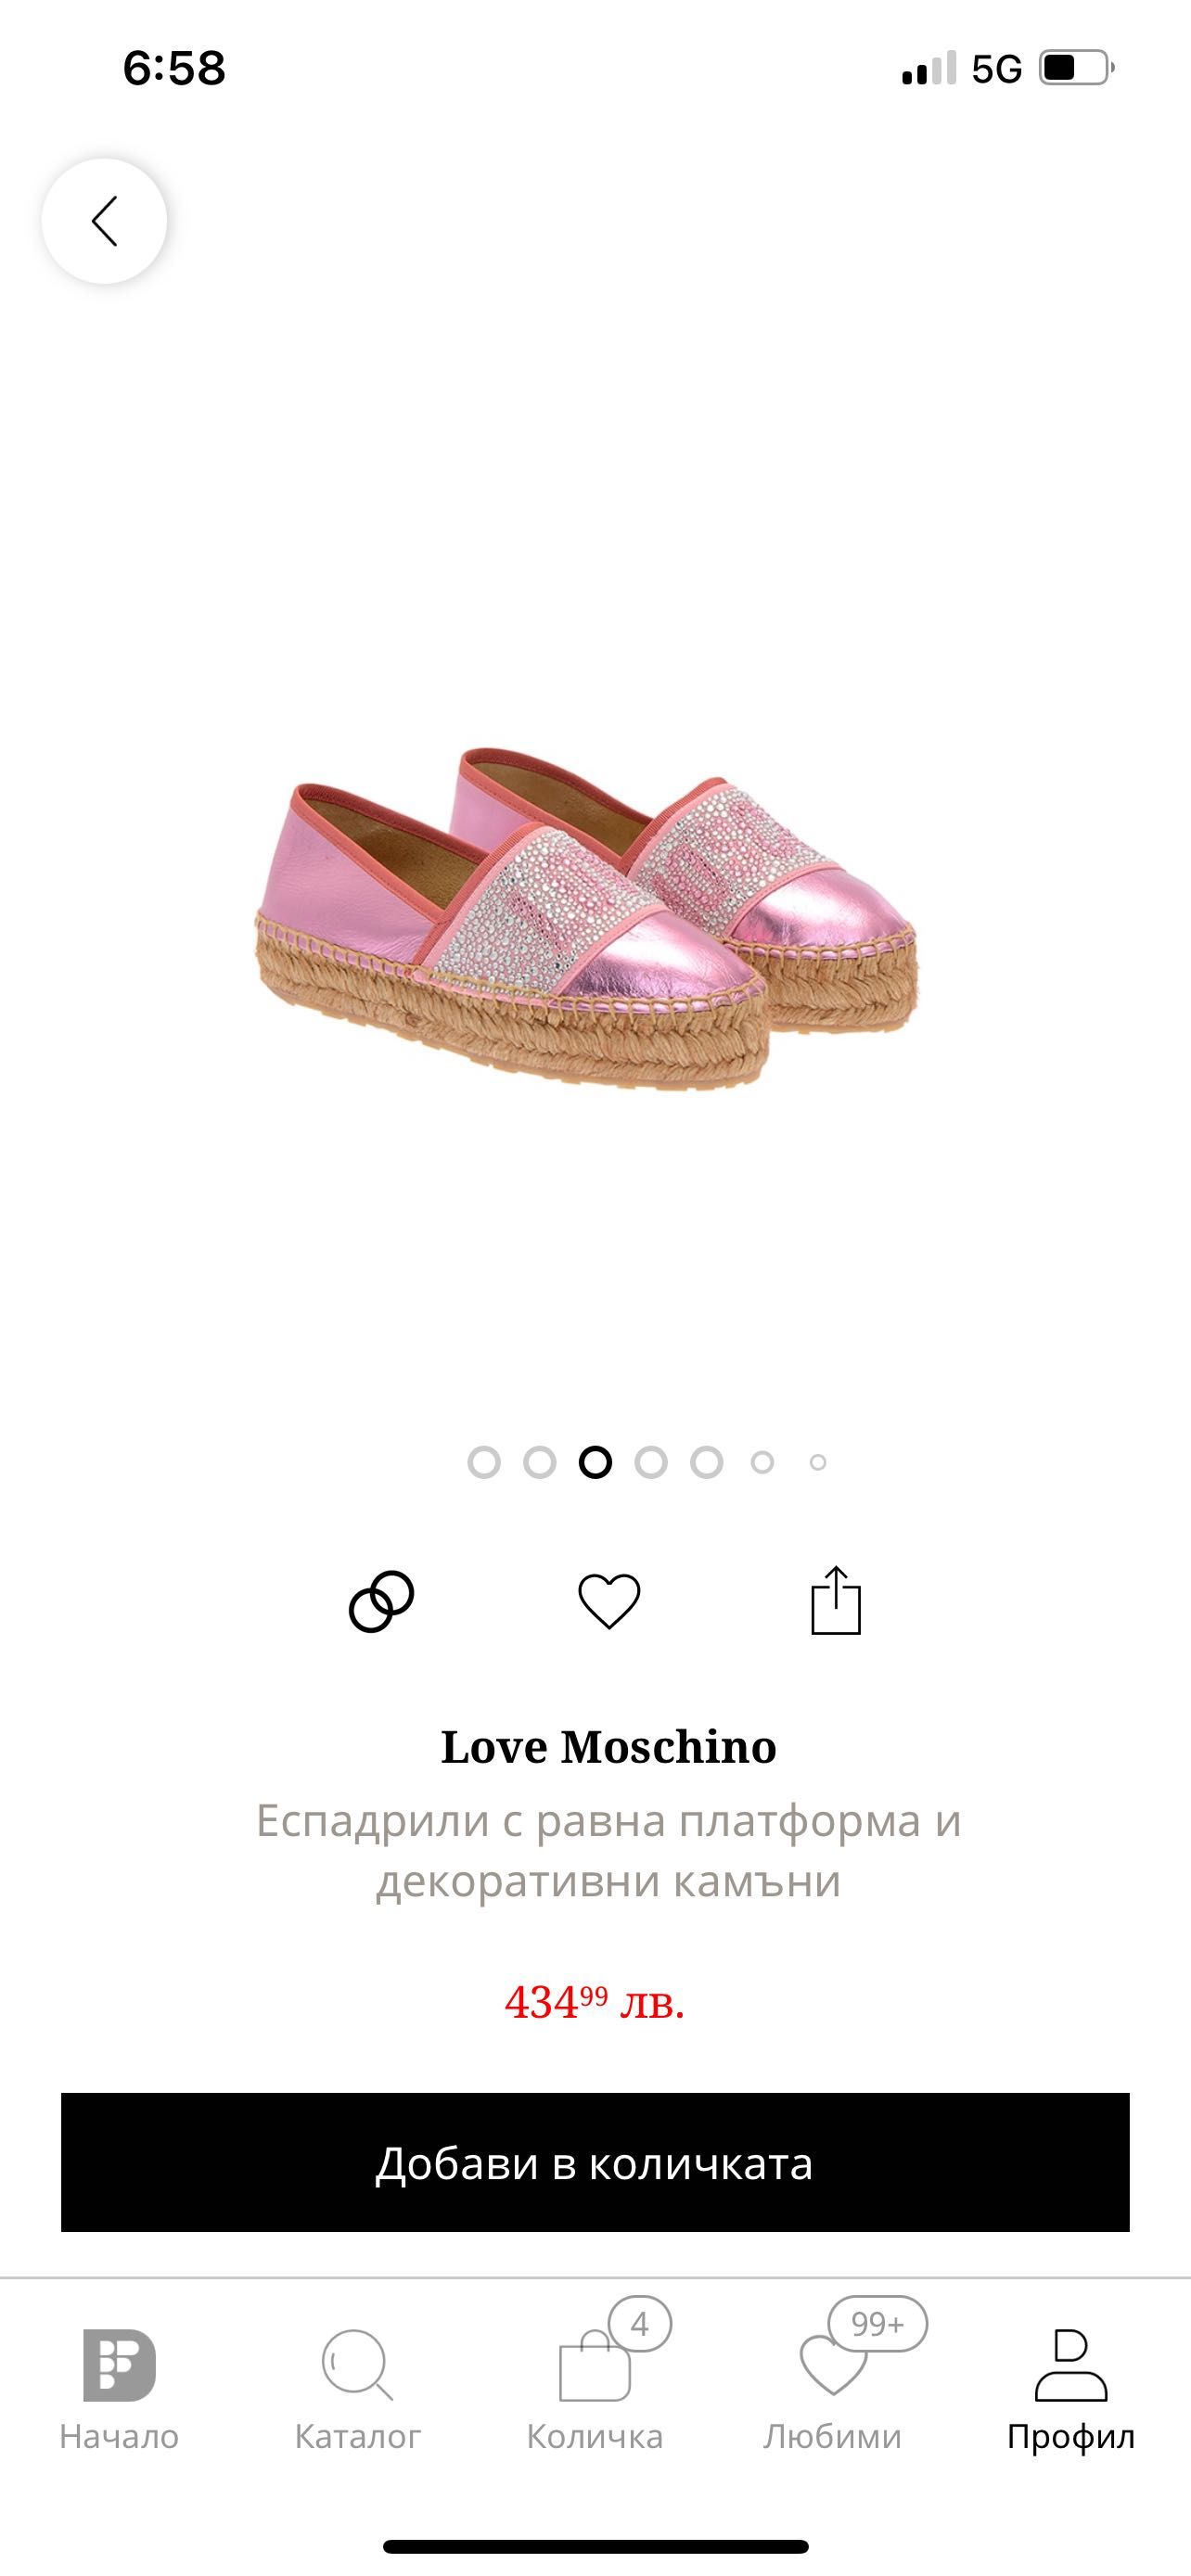 Обувки Michael Kors, Eva Longoria, Love Moschino